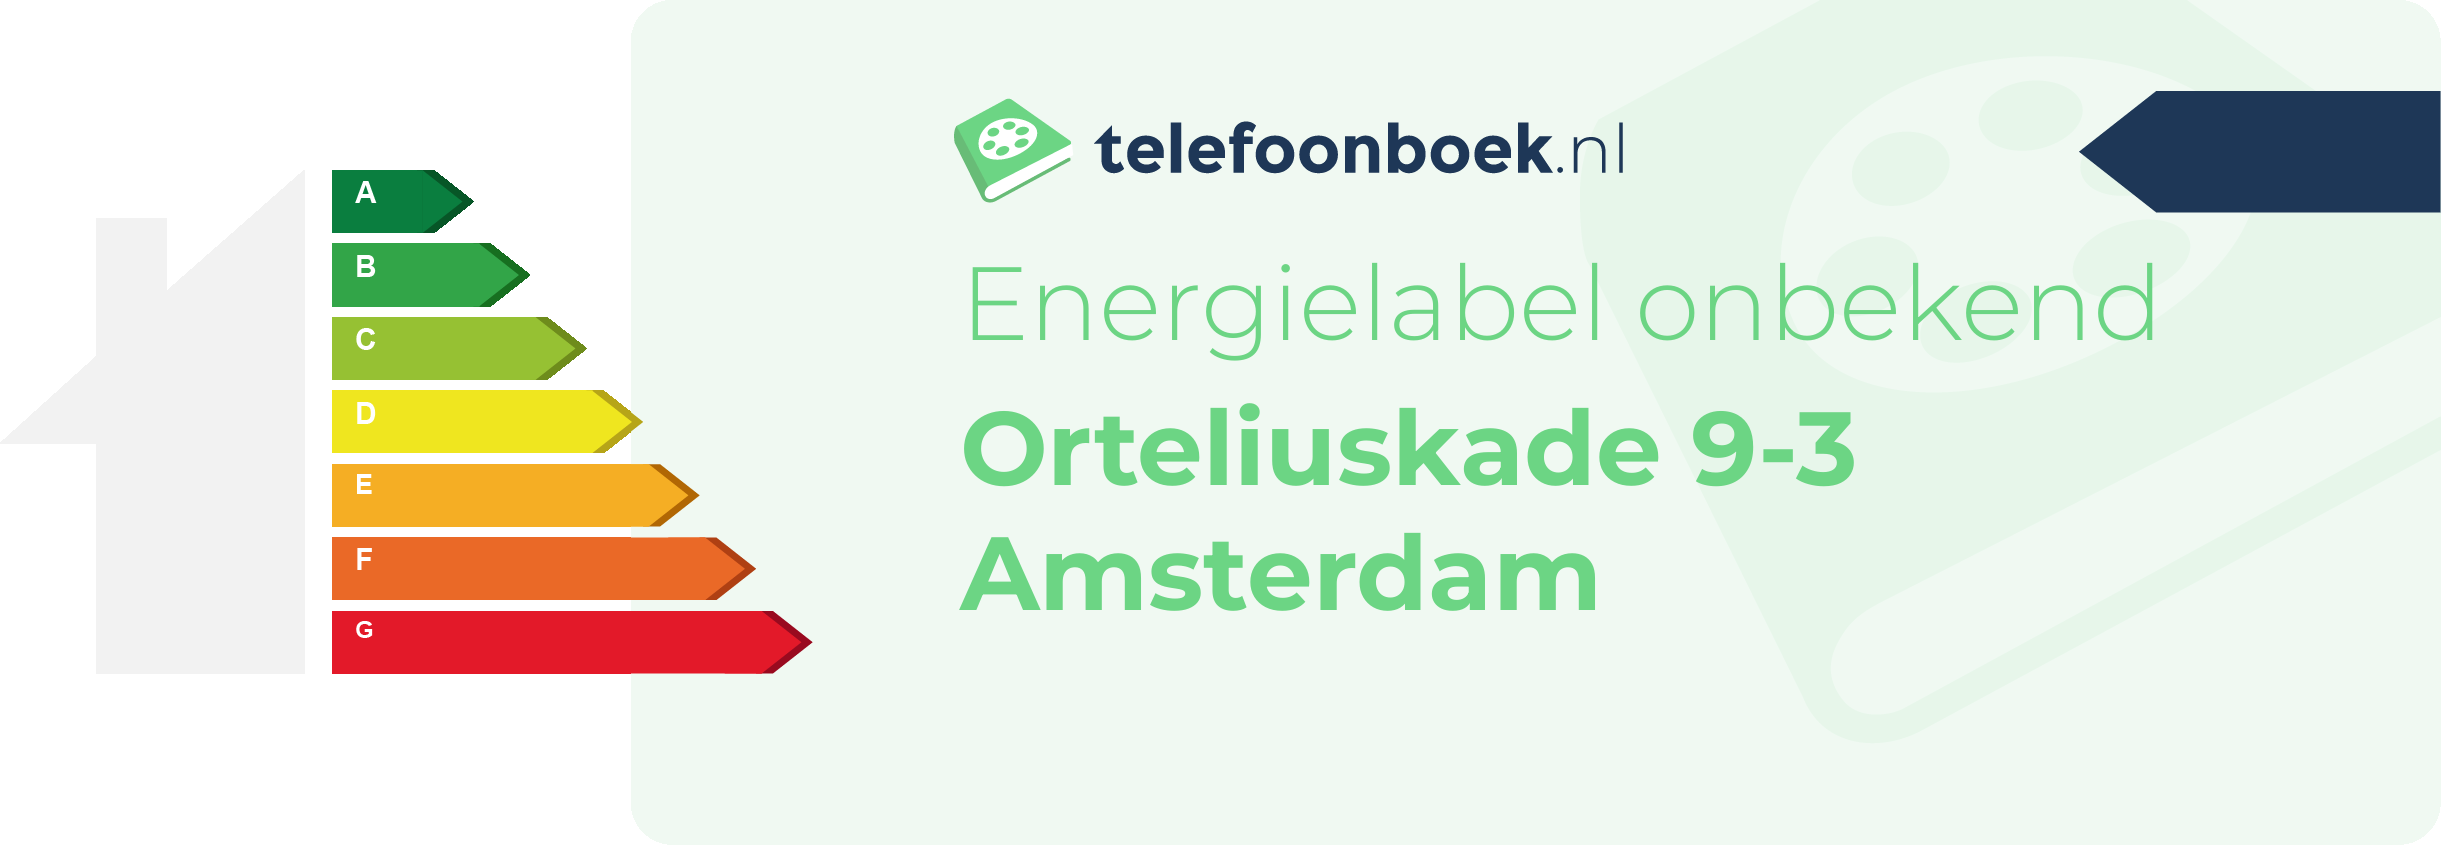 Energielabel Orteliuskade 9-3 Amsterdam